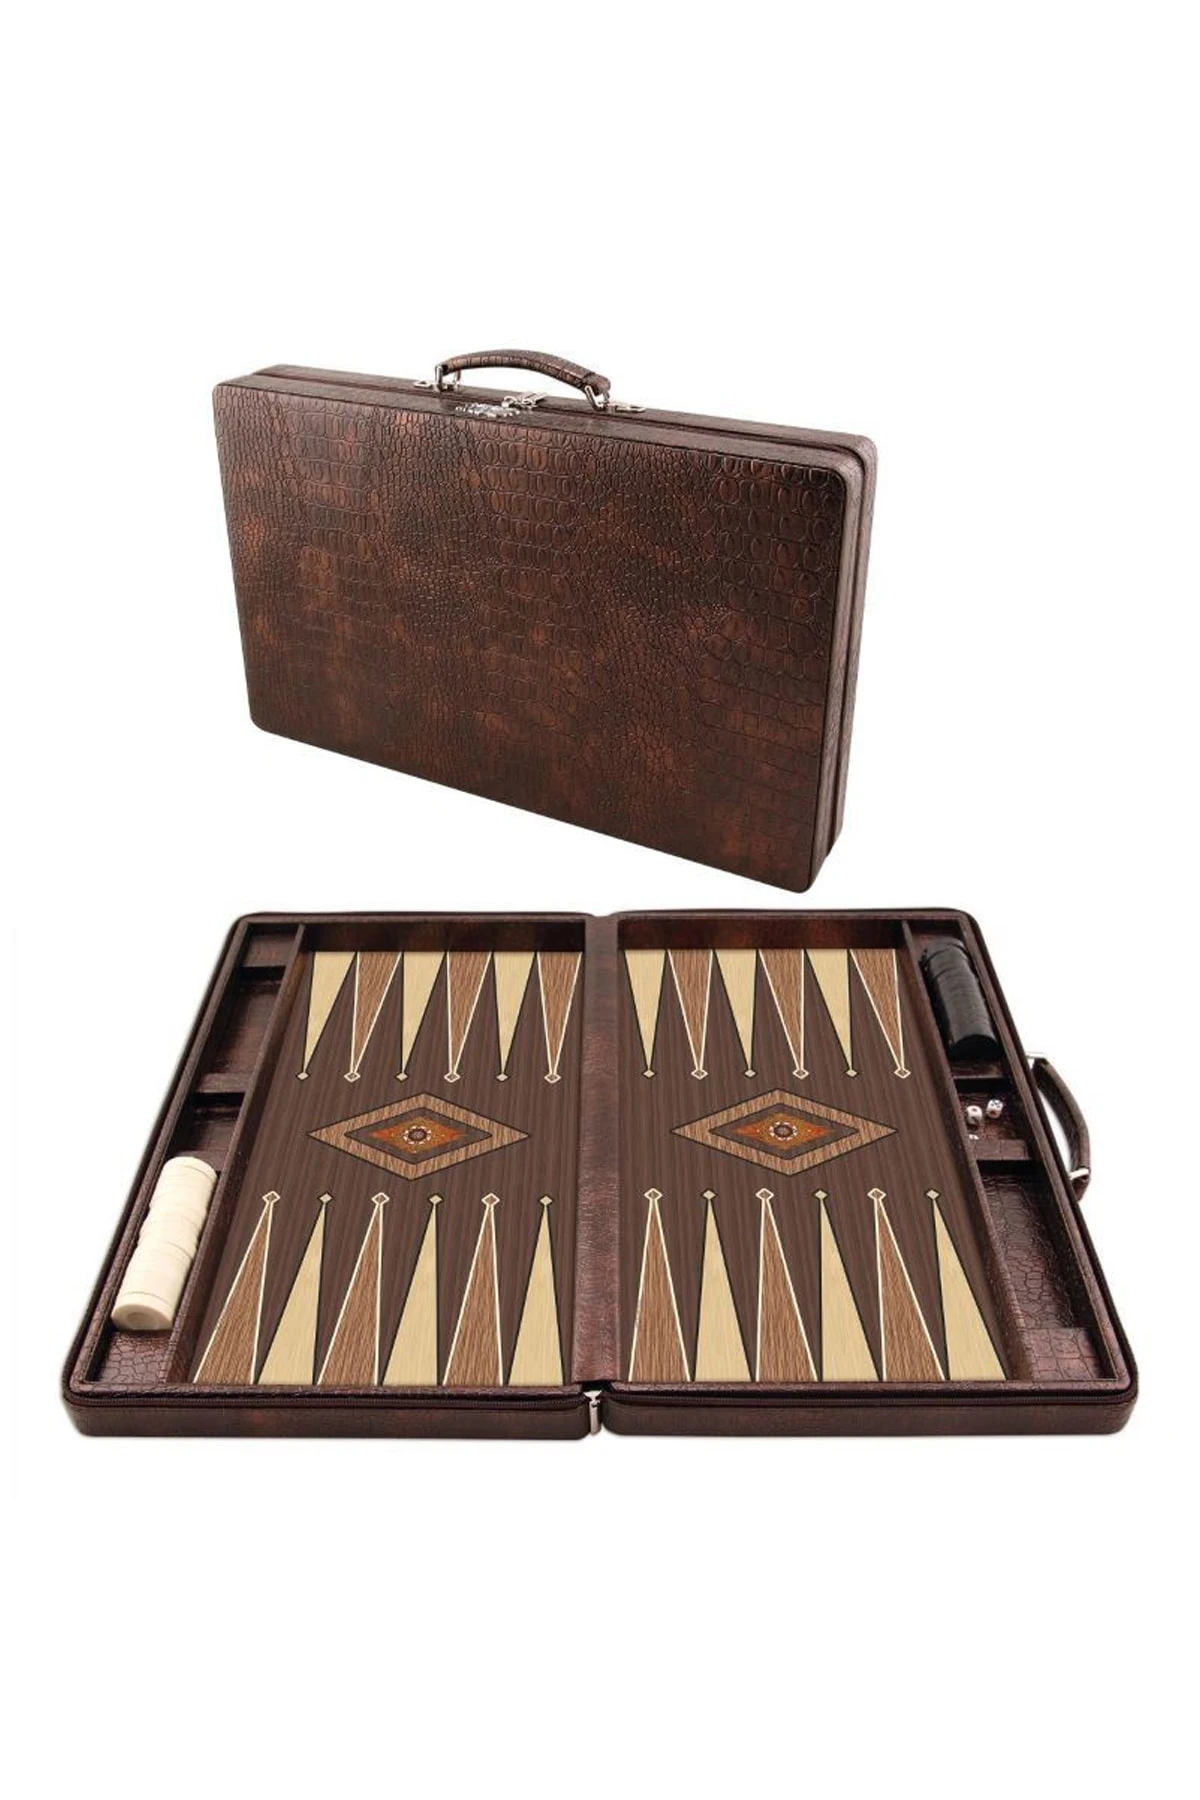 Diseño Premium Cuero Backgammon Set Bolso COCODRILO NOGAL HECHA A MANO en Turquía